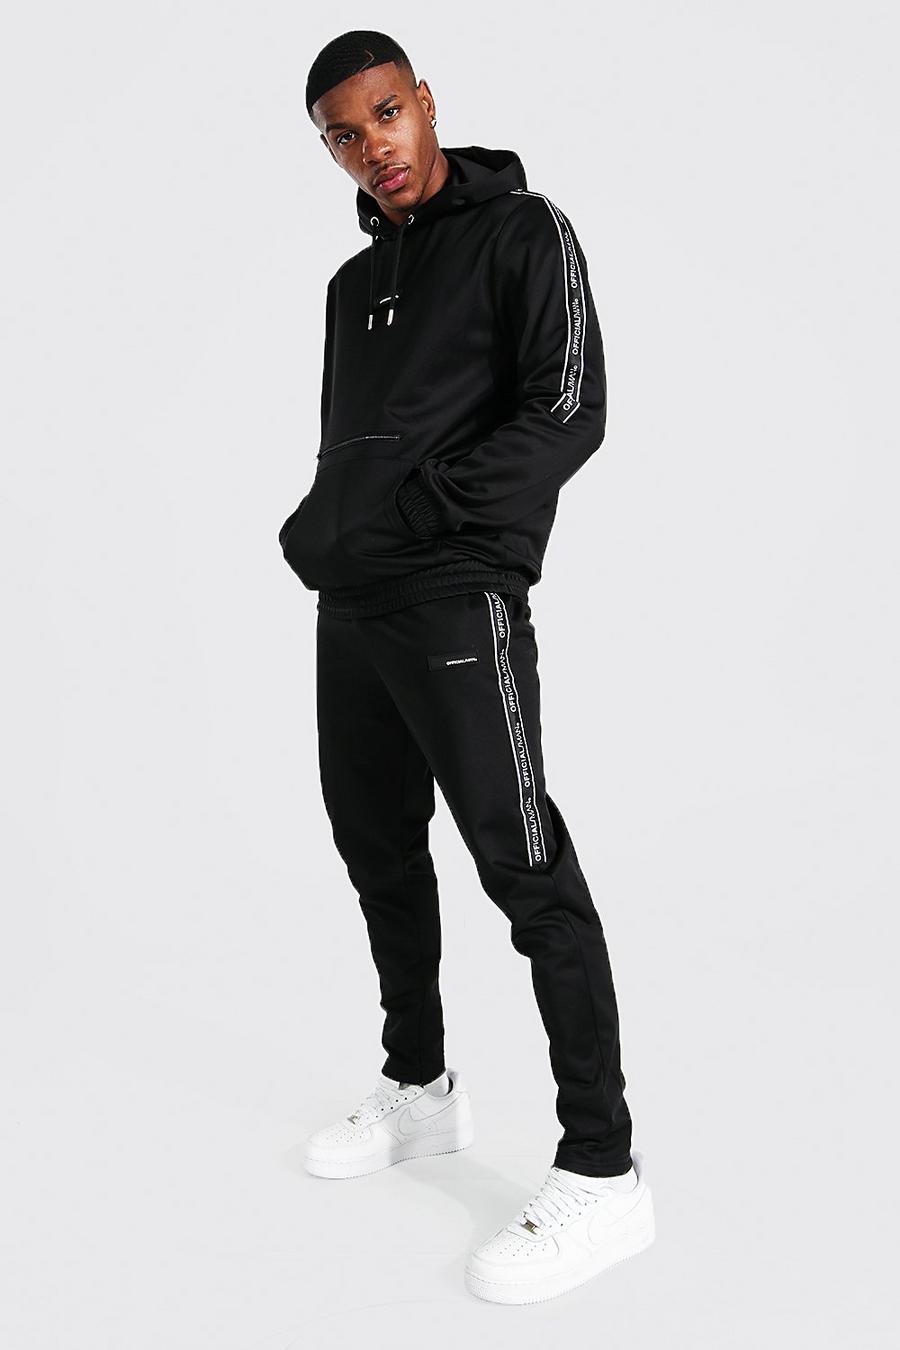 Tuta sportiva con cappuccio rigido, striscia laterale con logo Man e zip, Black nero image number 1